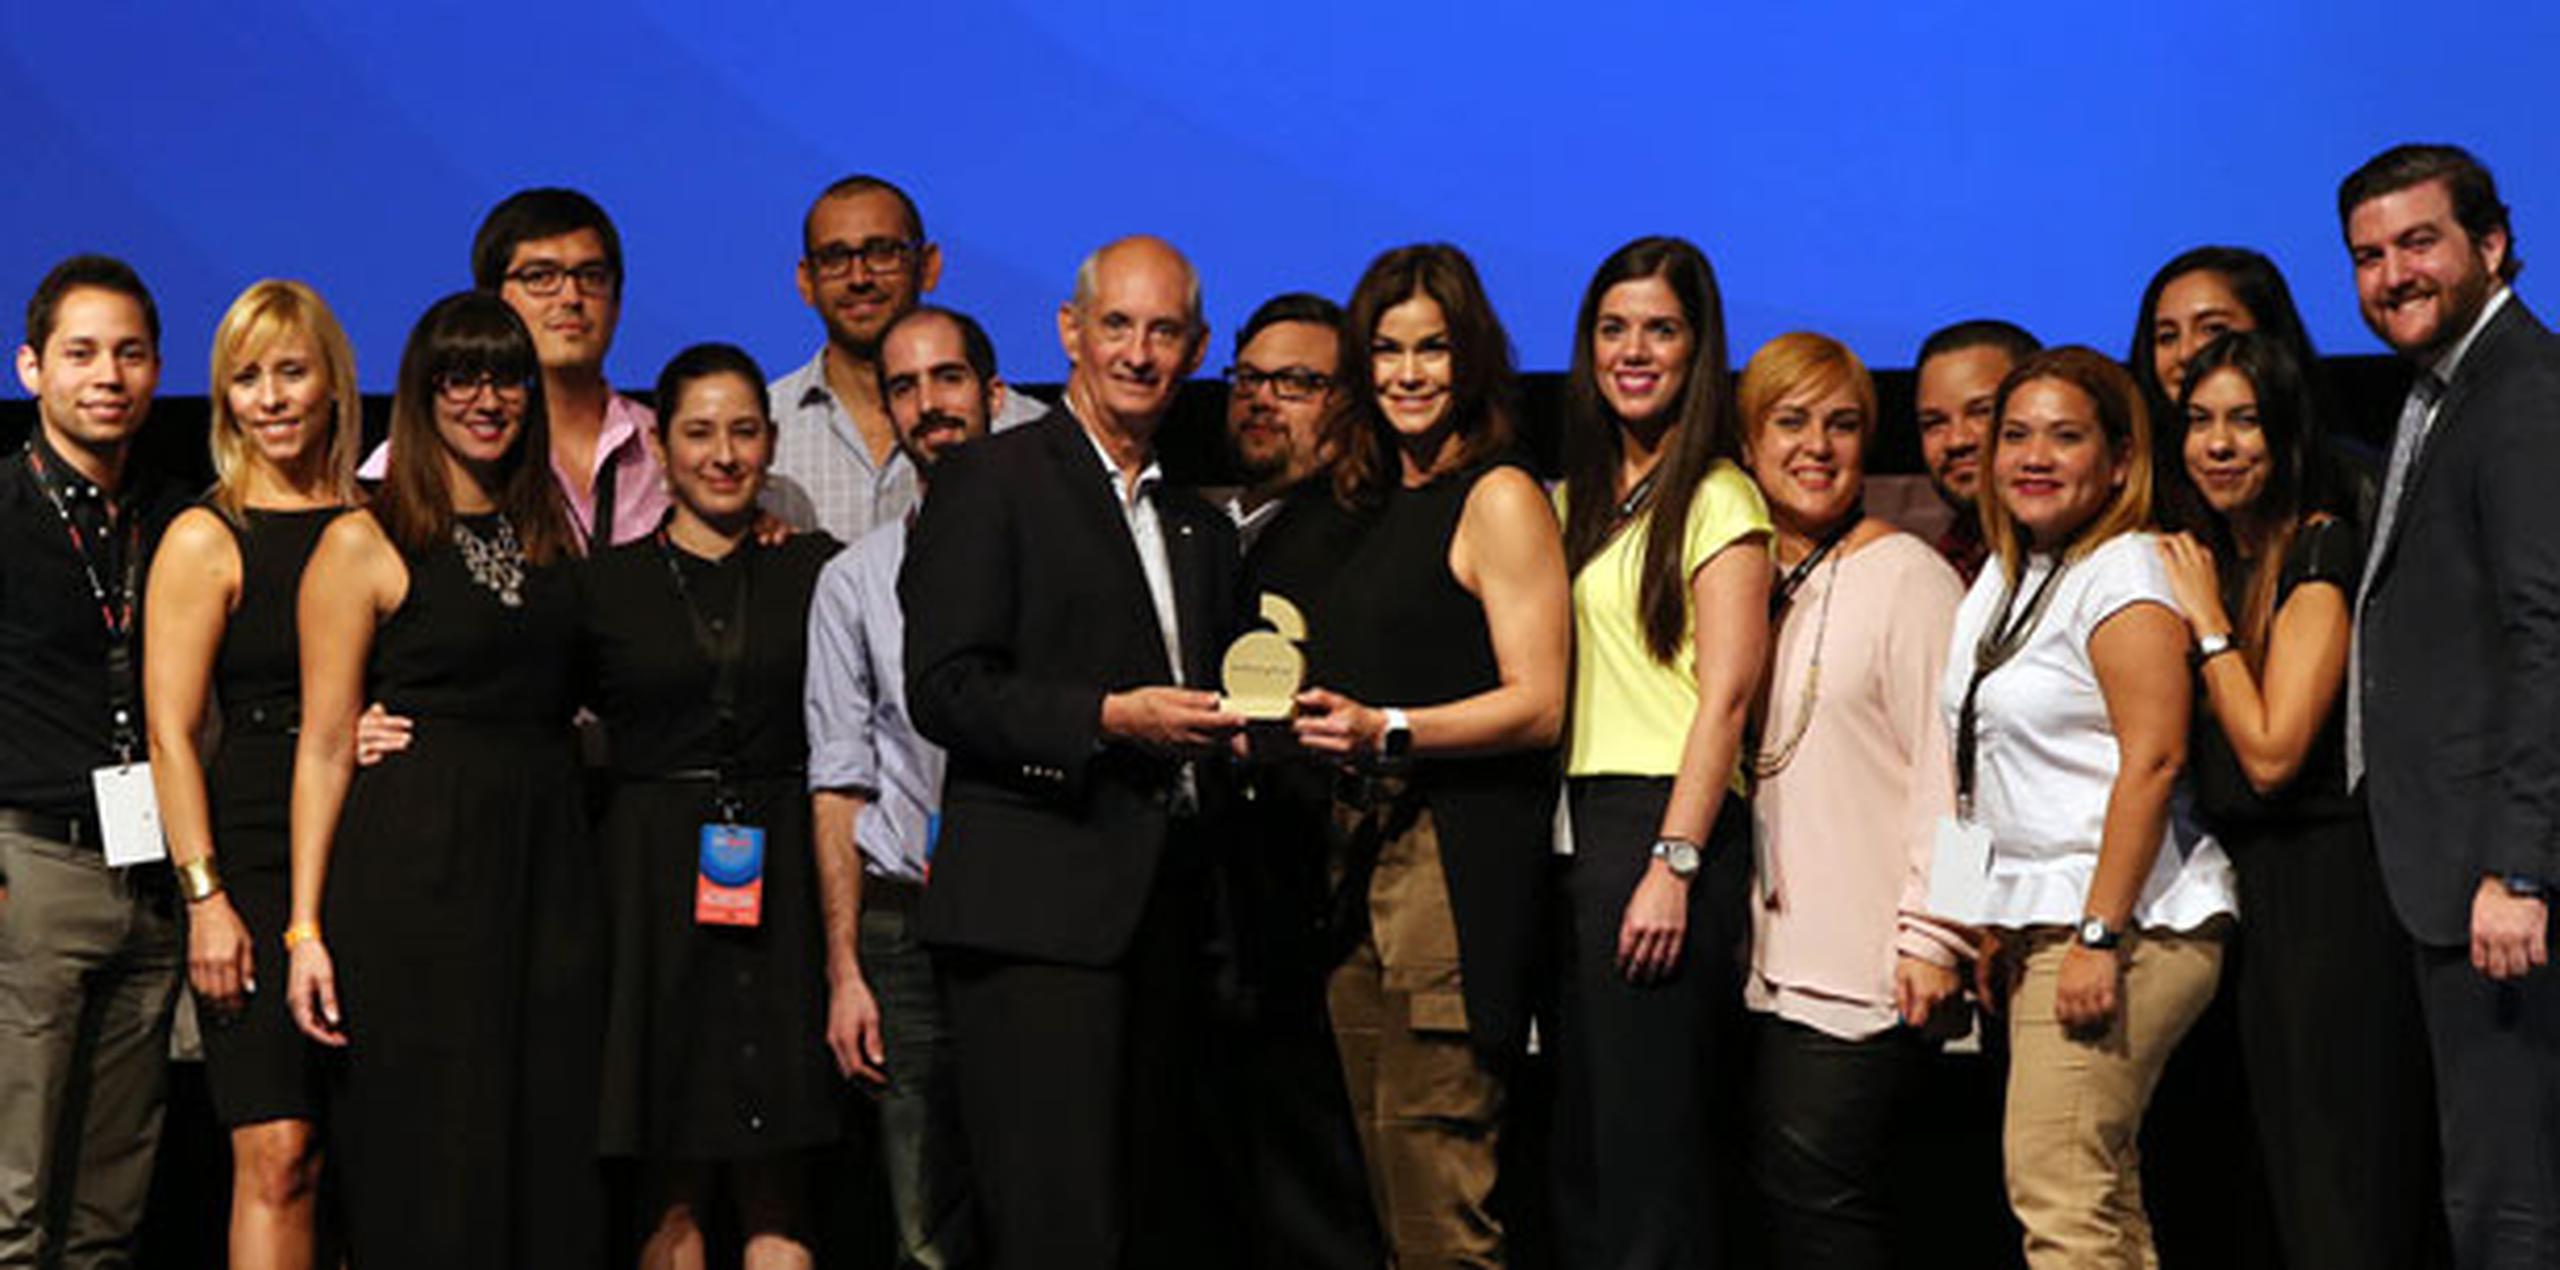 Loren Ferré Rangel, principal oficial de Audiencias de GFR Media, recibió el premio rodeada de su equipo. (david.villafane@gfrmedia.com)